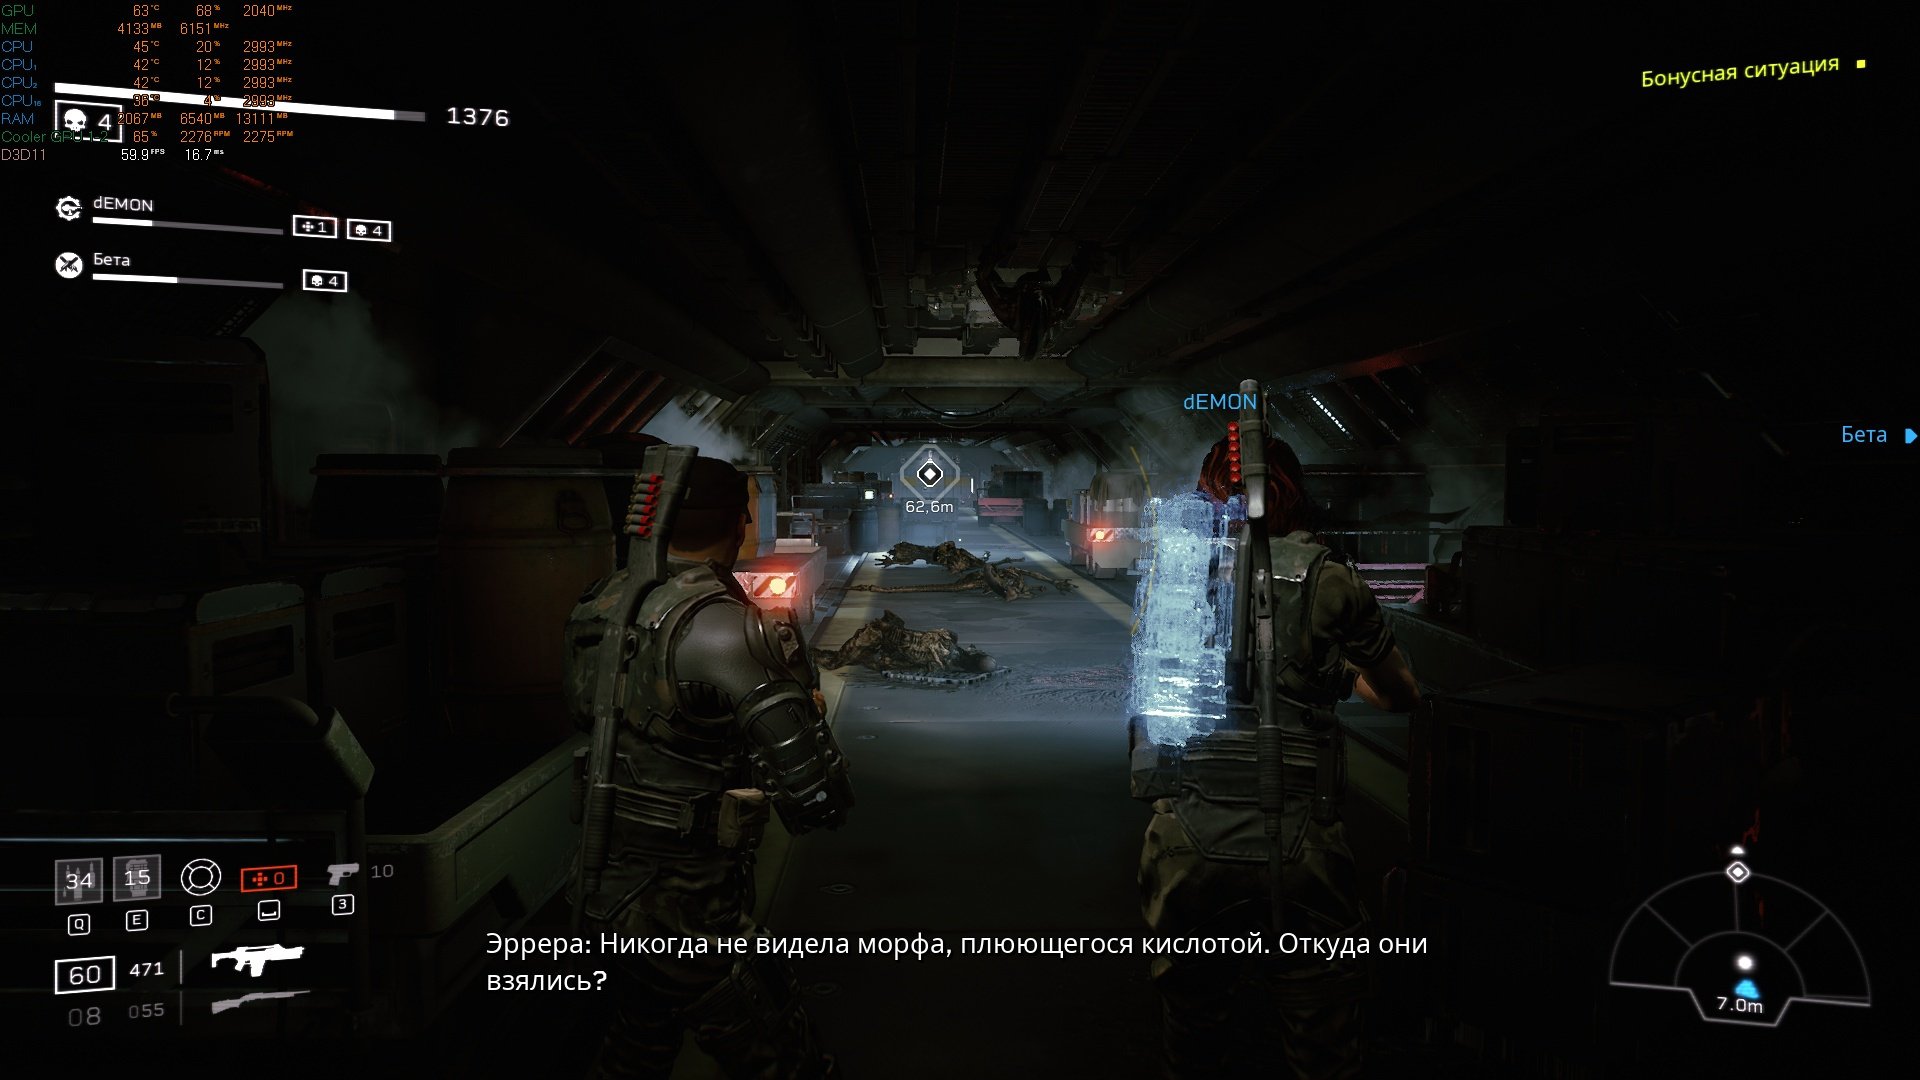 Скриншот 2 к игре Aliens: Fireteam Elite v.1.0.5.114949 [Архив] (2021)